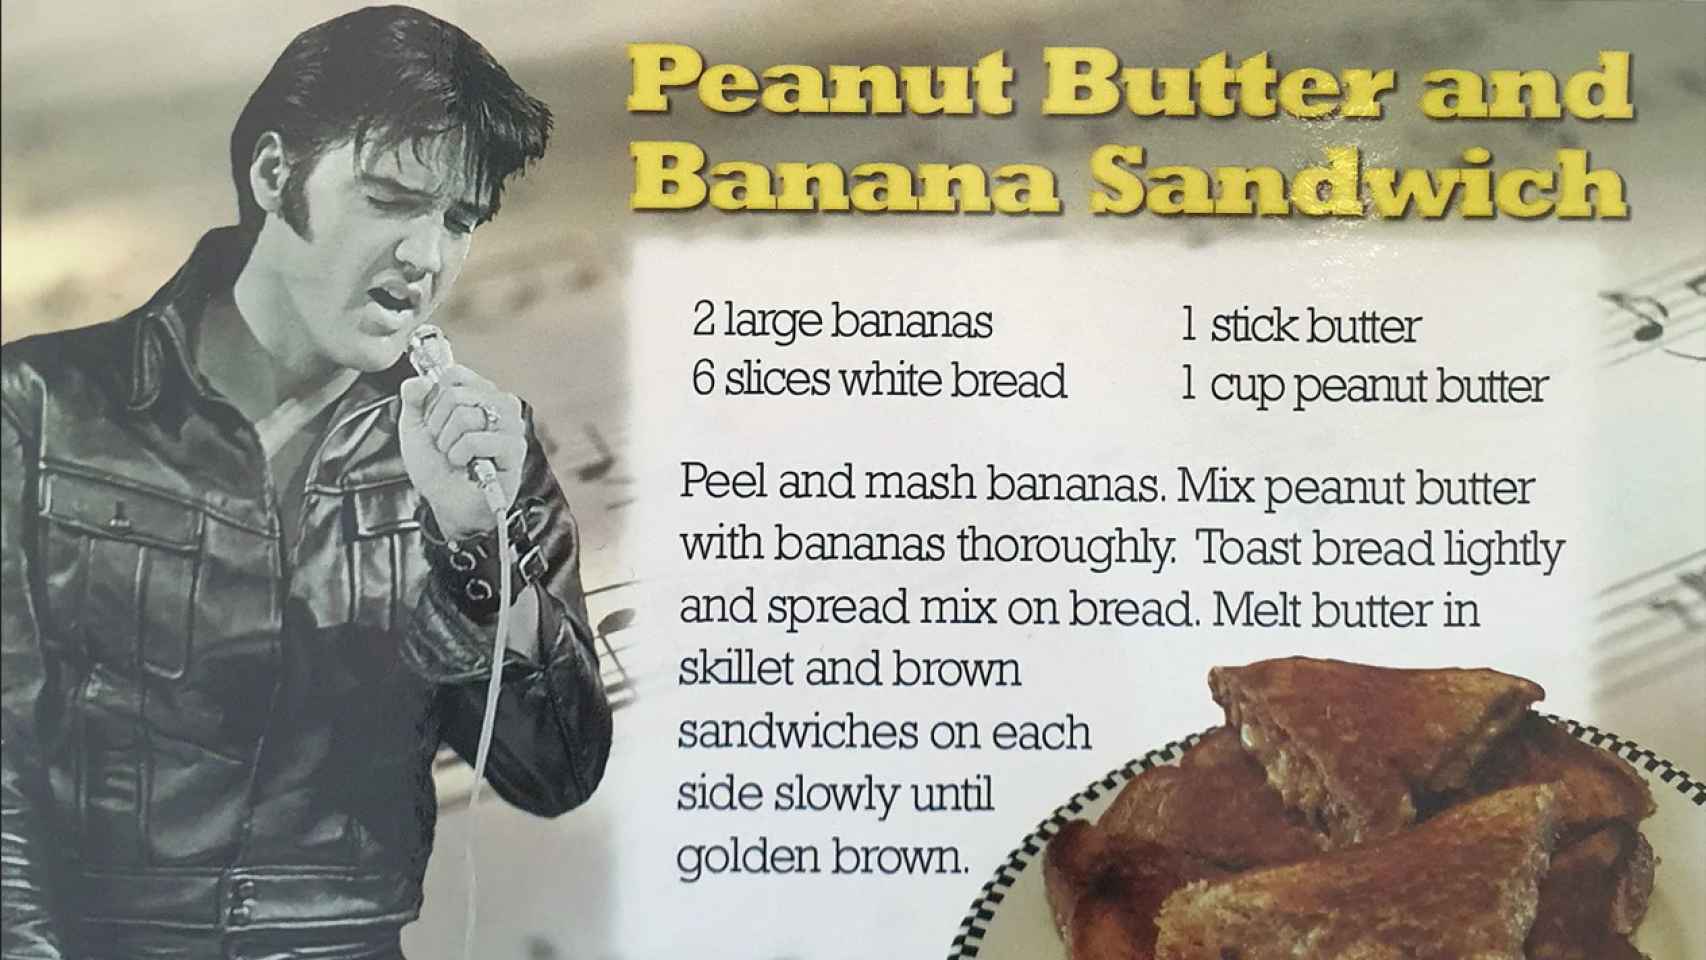 La receta del 'Sándwich Elvis' en uno de los libros de recetas de Elvis Presley.